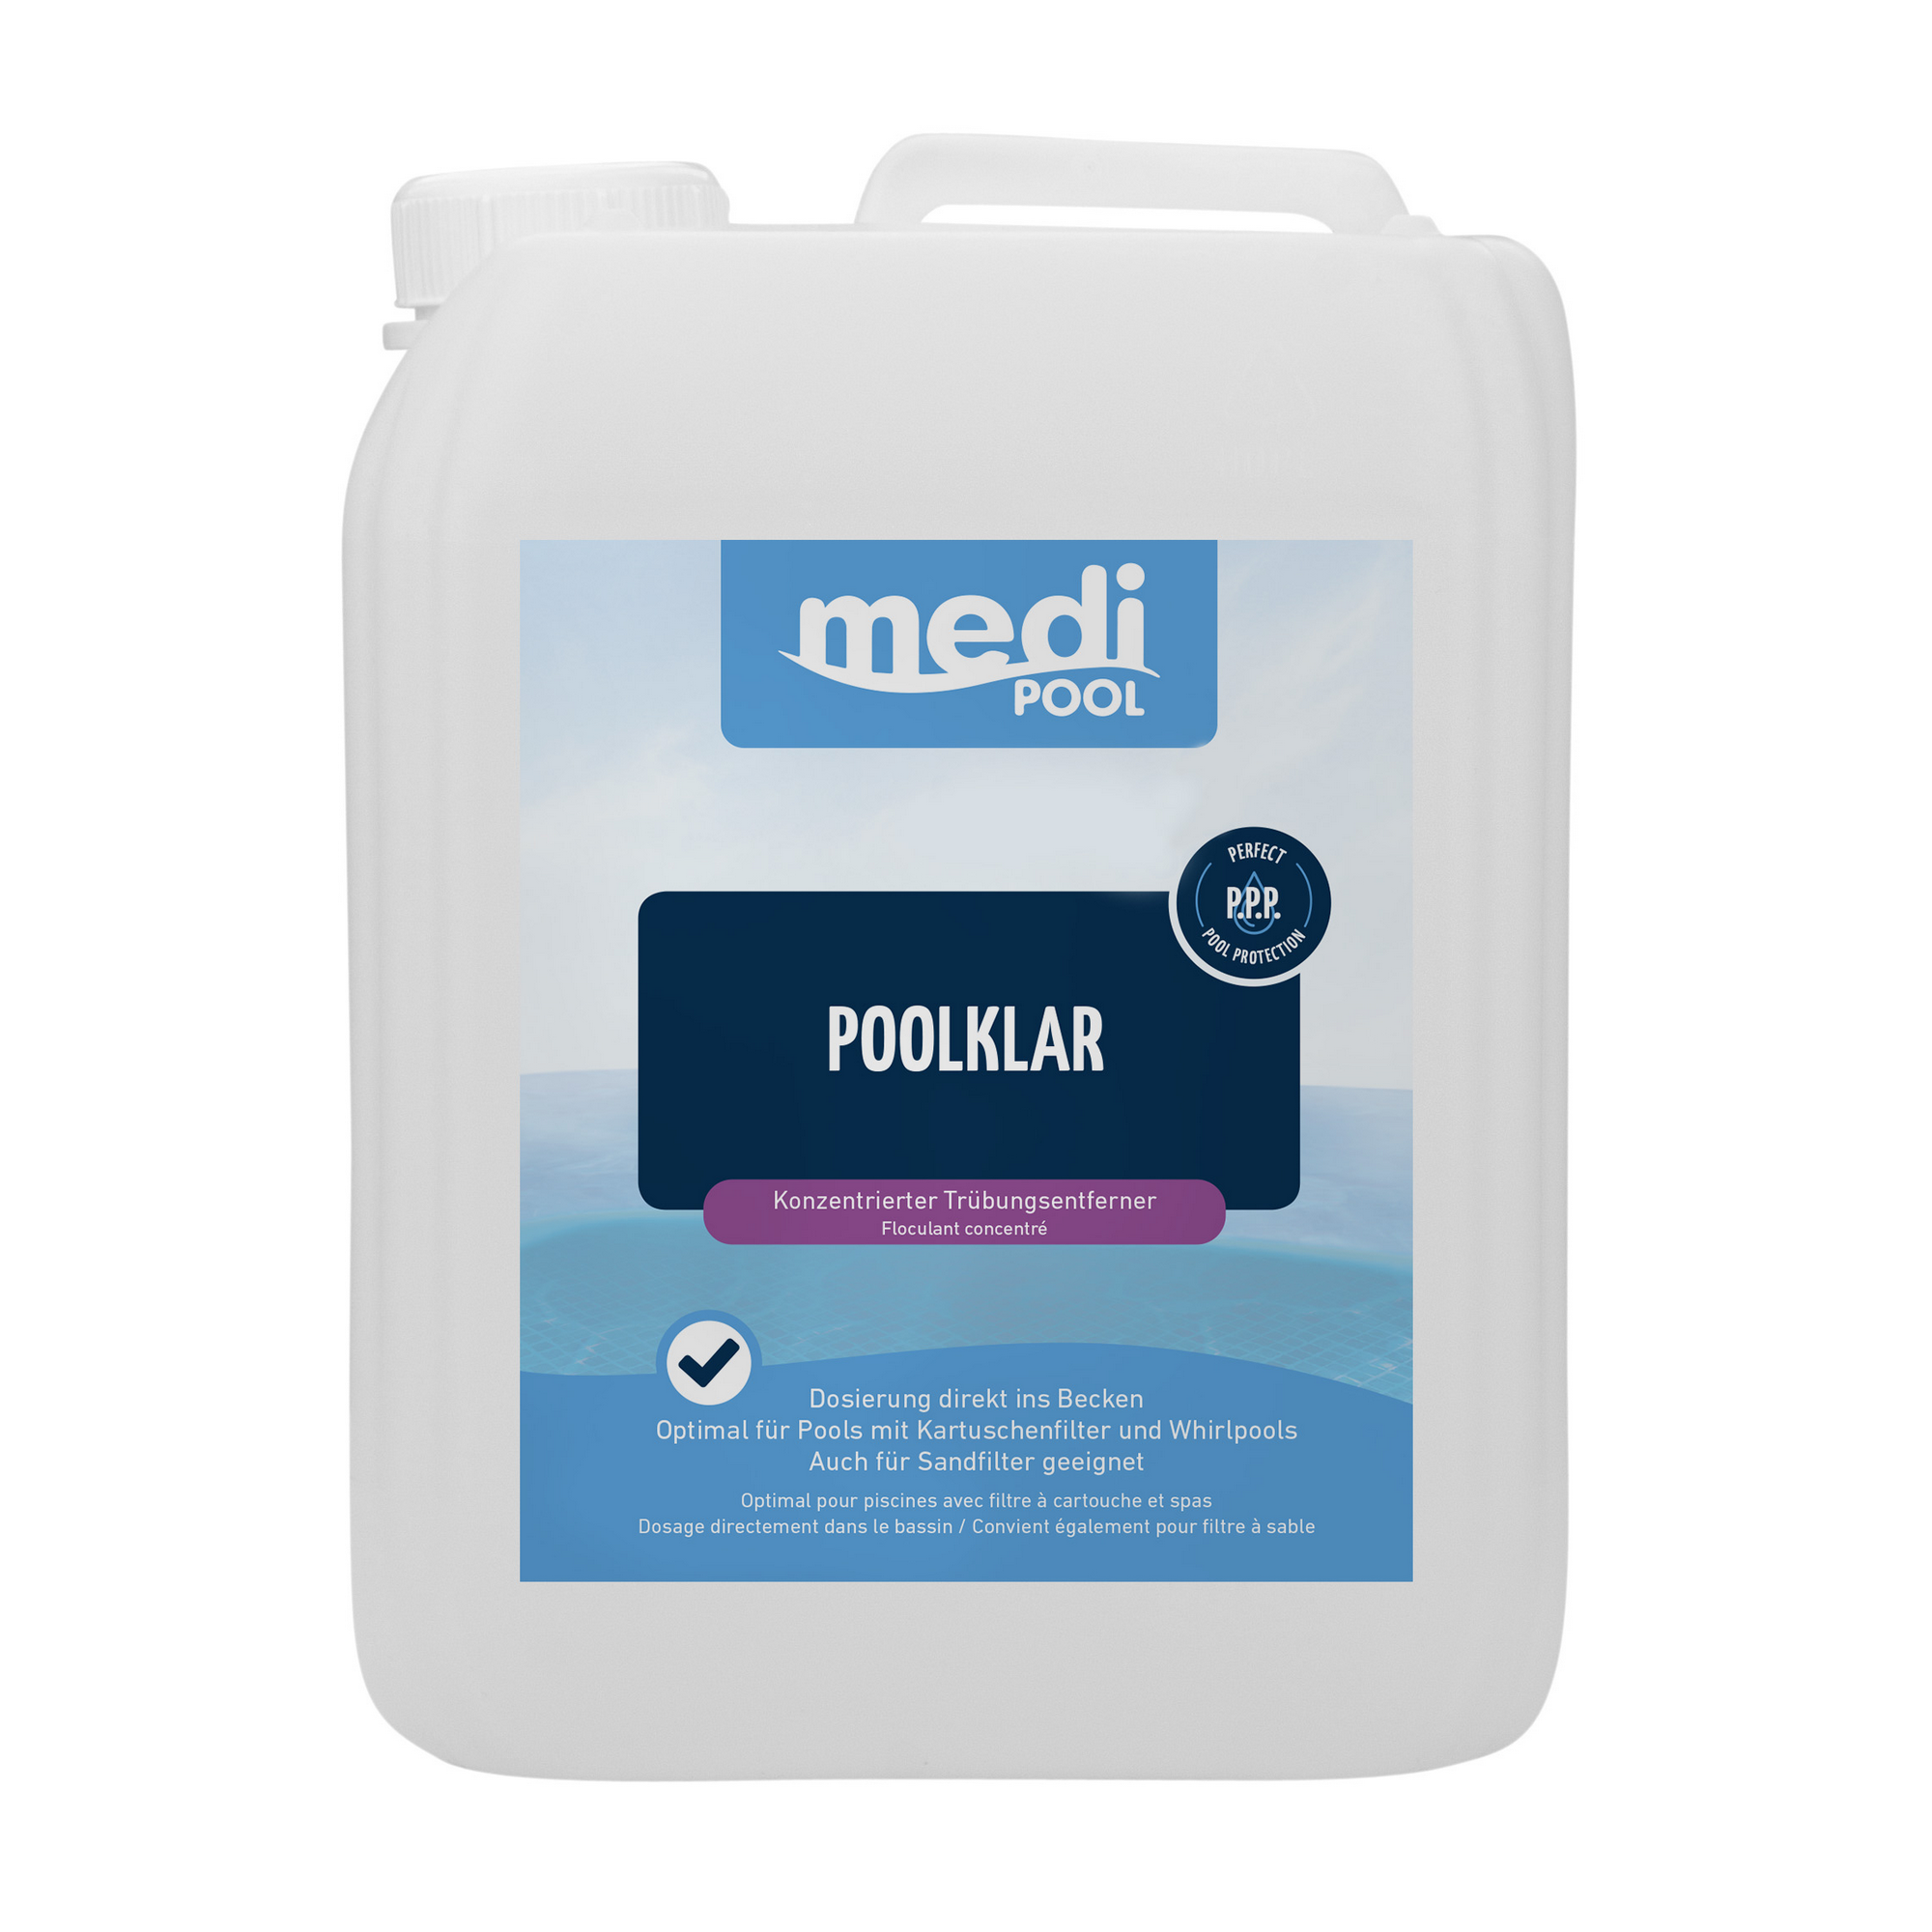 Poolklar-Konzentrat 5 Liter, für die Poolpflege + product picture